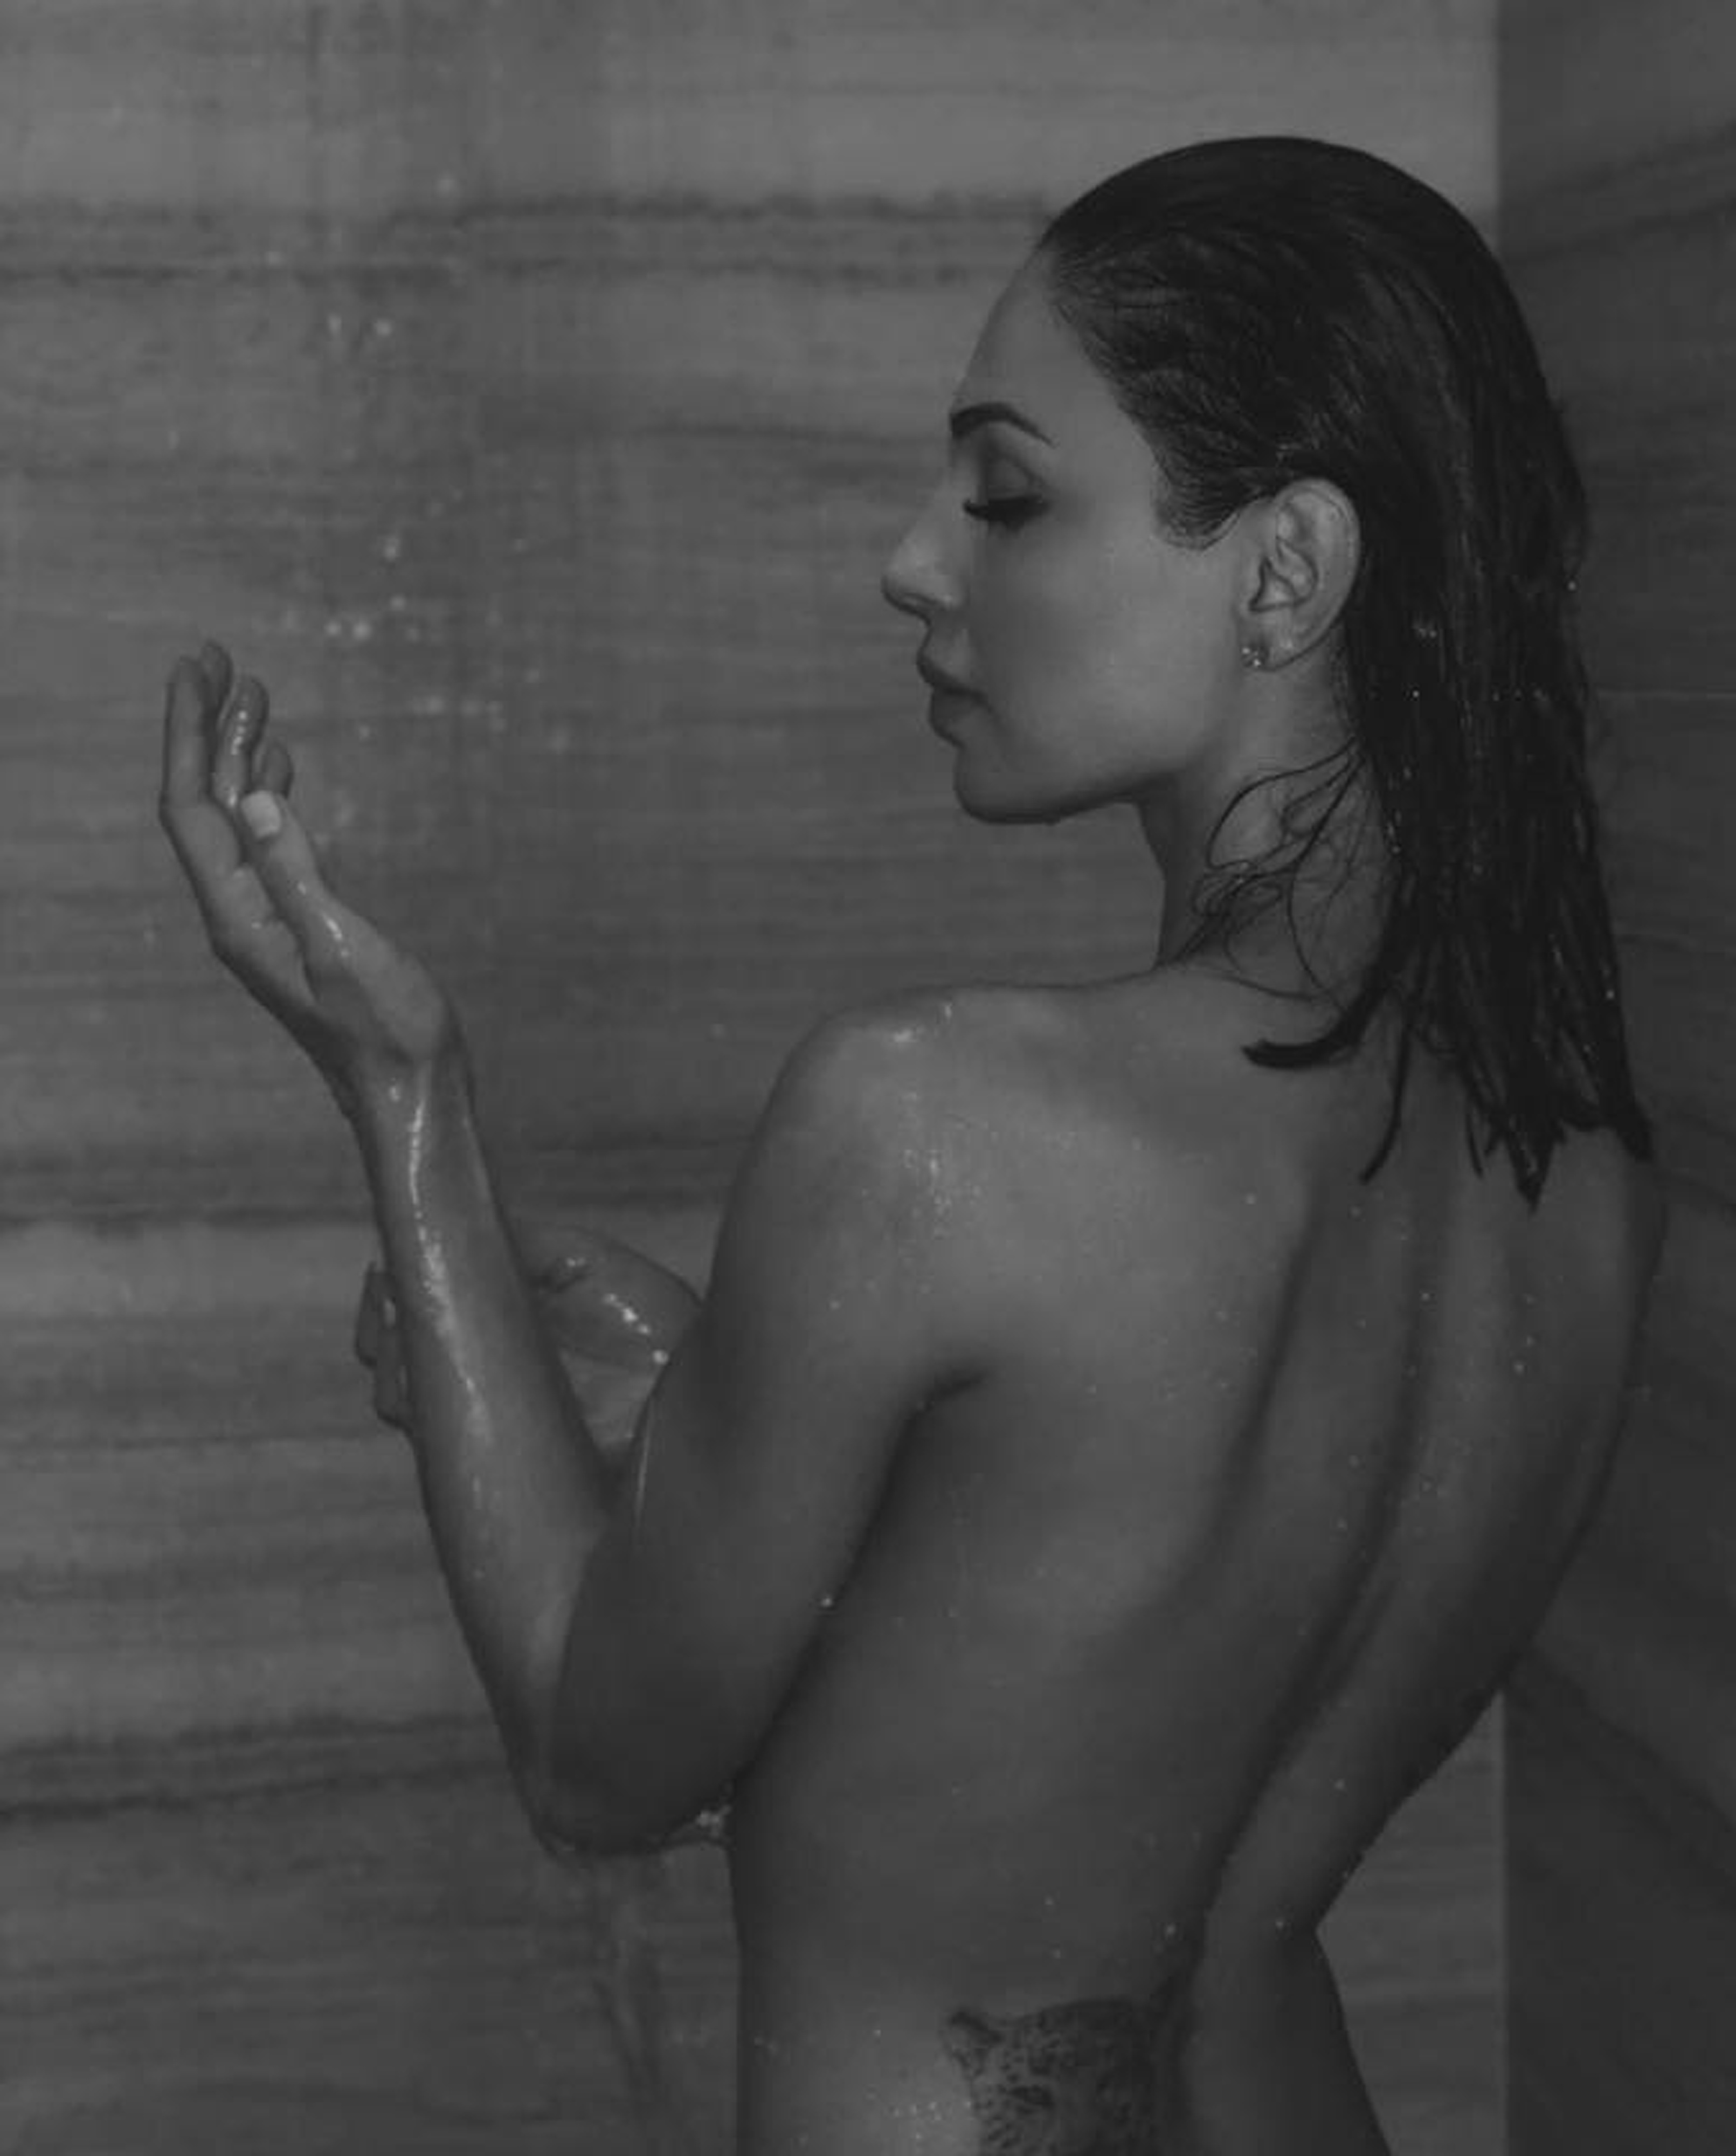 Nuda sotto la doccia, i nuovi scatti di Anna Tatangelo scatenano il web.